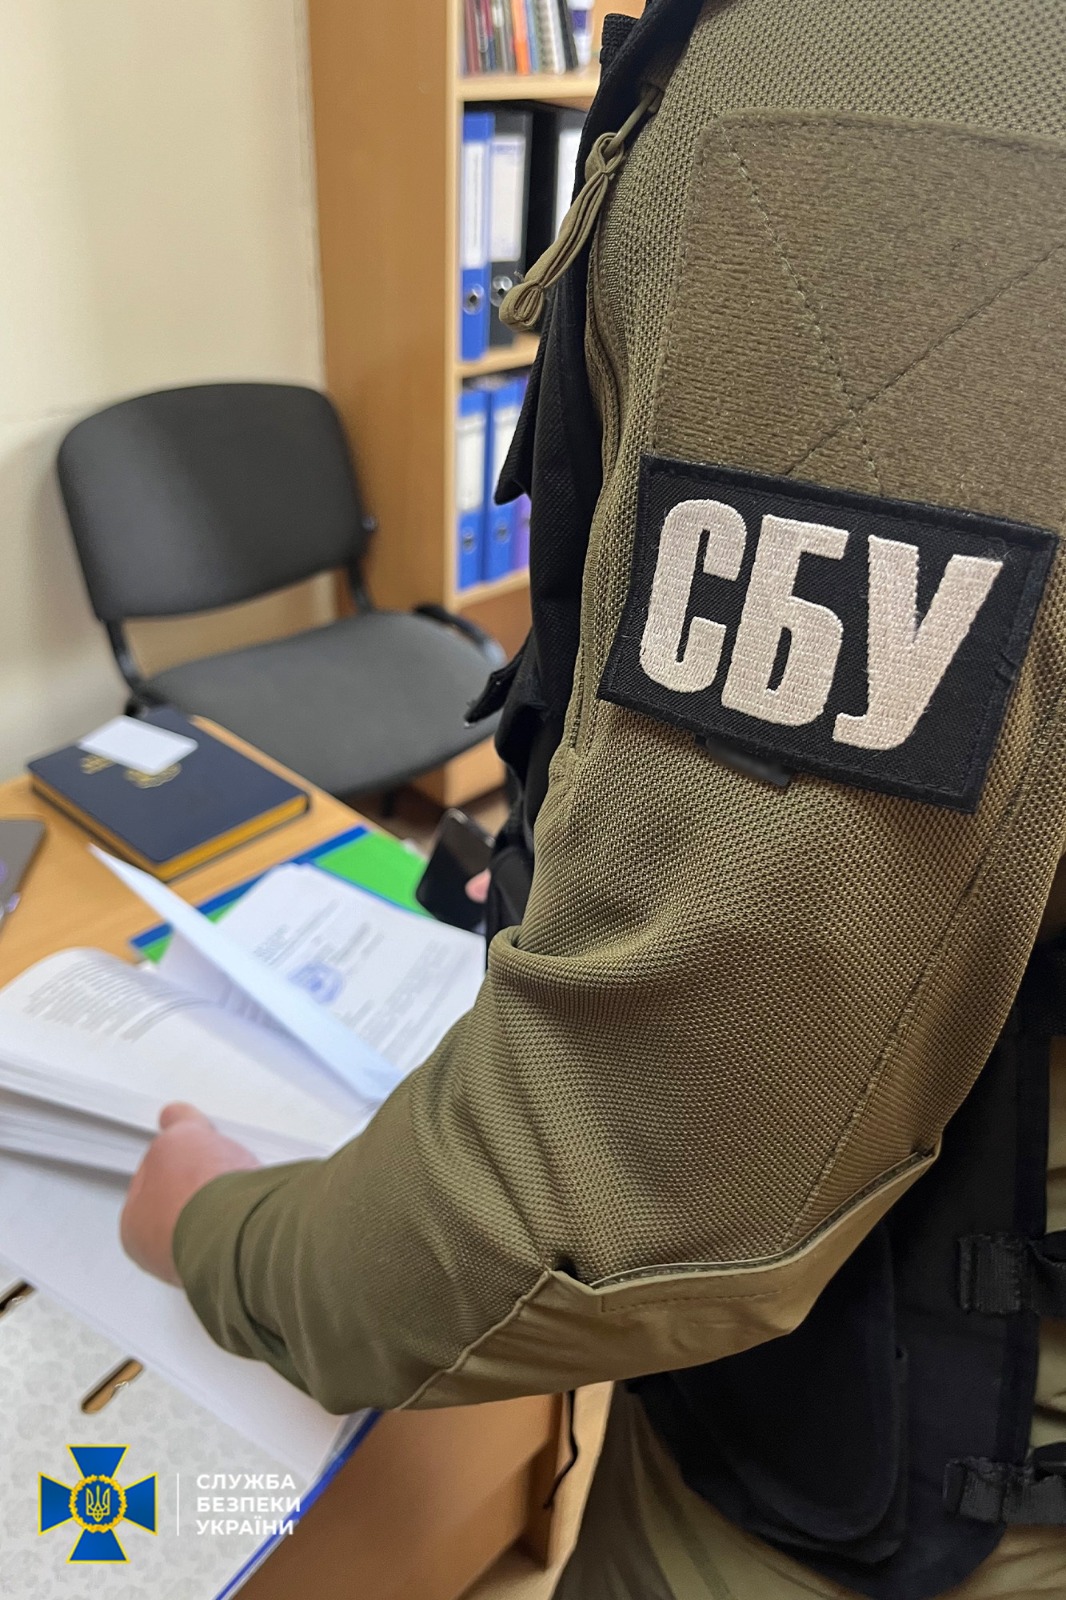 Служба безпеки України та Національна поліція провели серію обшуків у адмінбудівлі Ужгородської міської ради.